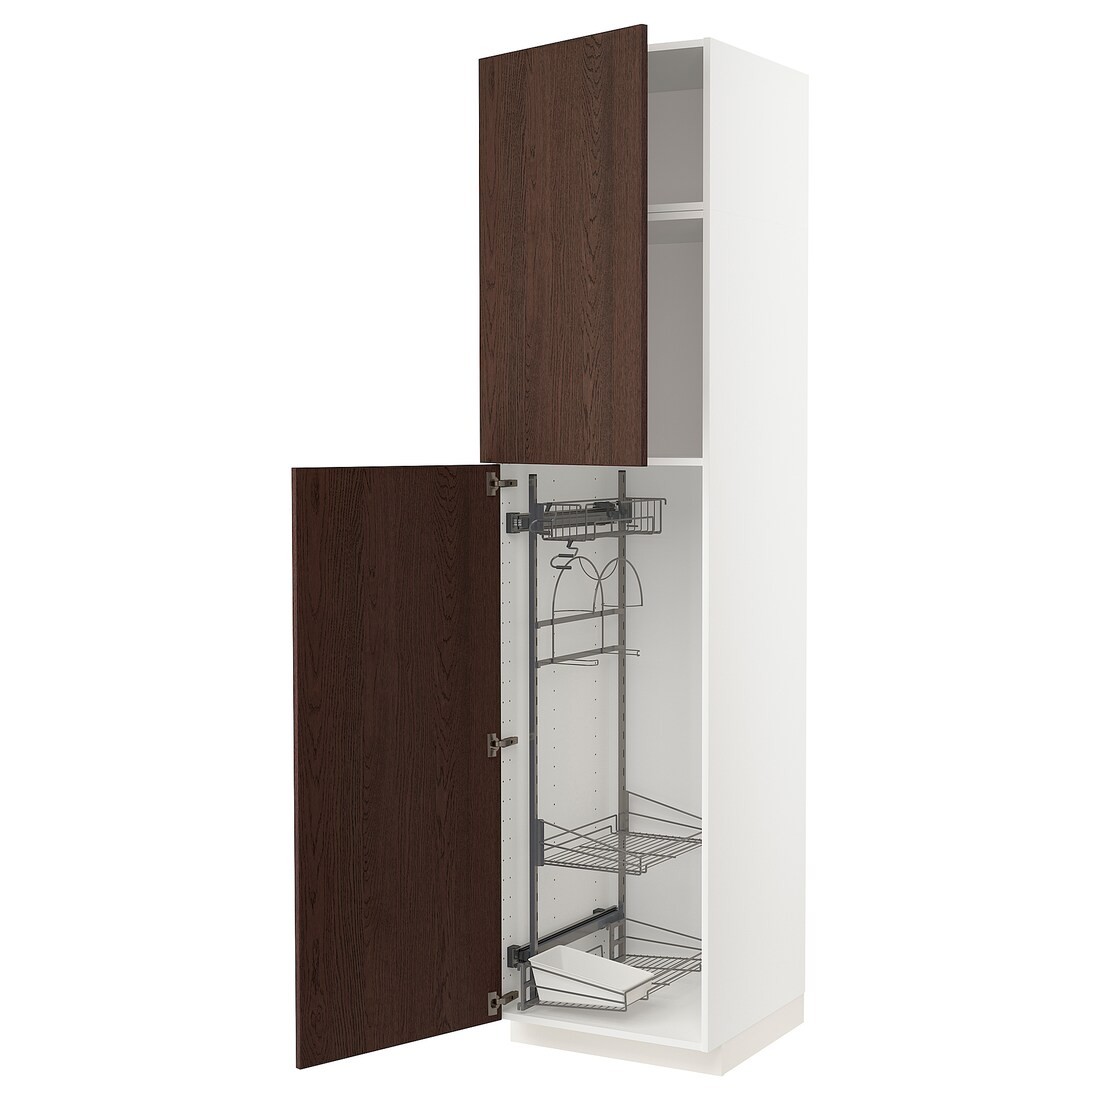 METOD МЕТОД Высокий шкаф с отделением для аксессуаров для уборки, белый / Sinarp коричневый, 60x60x240 см